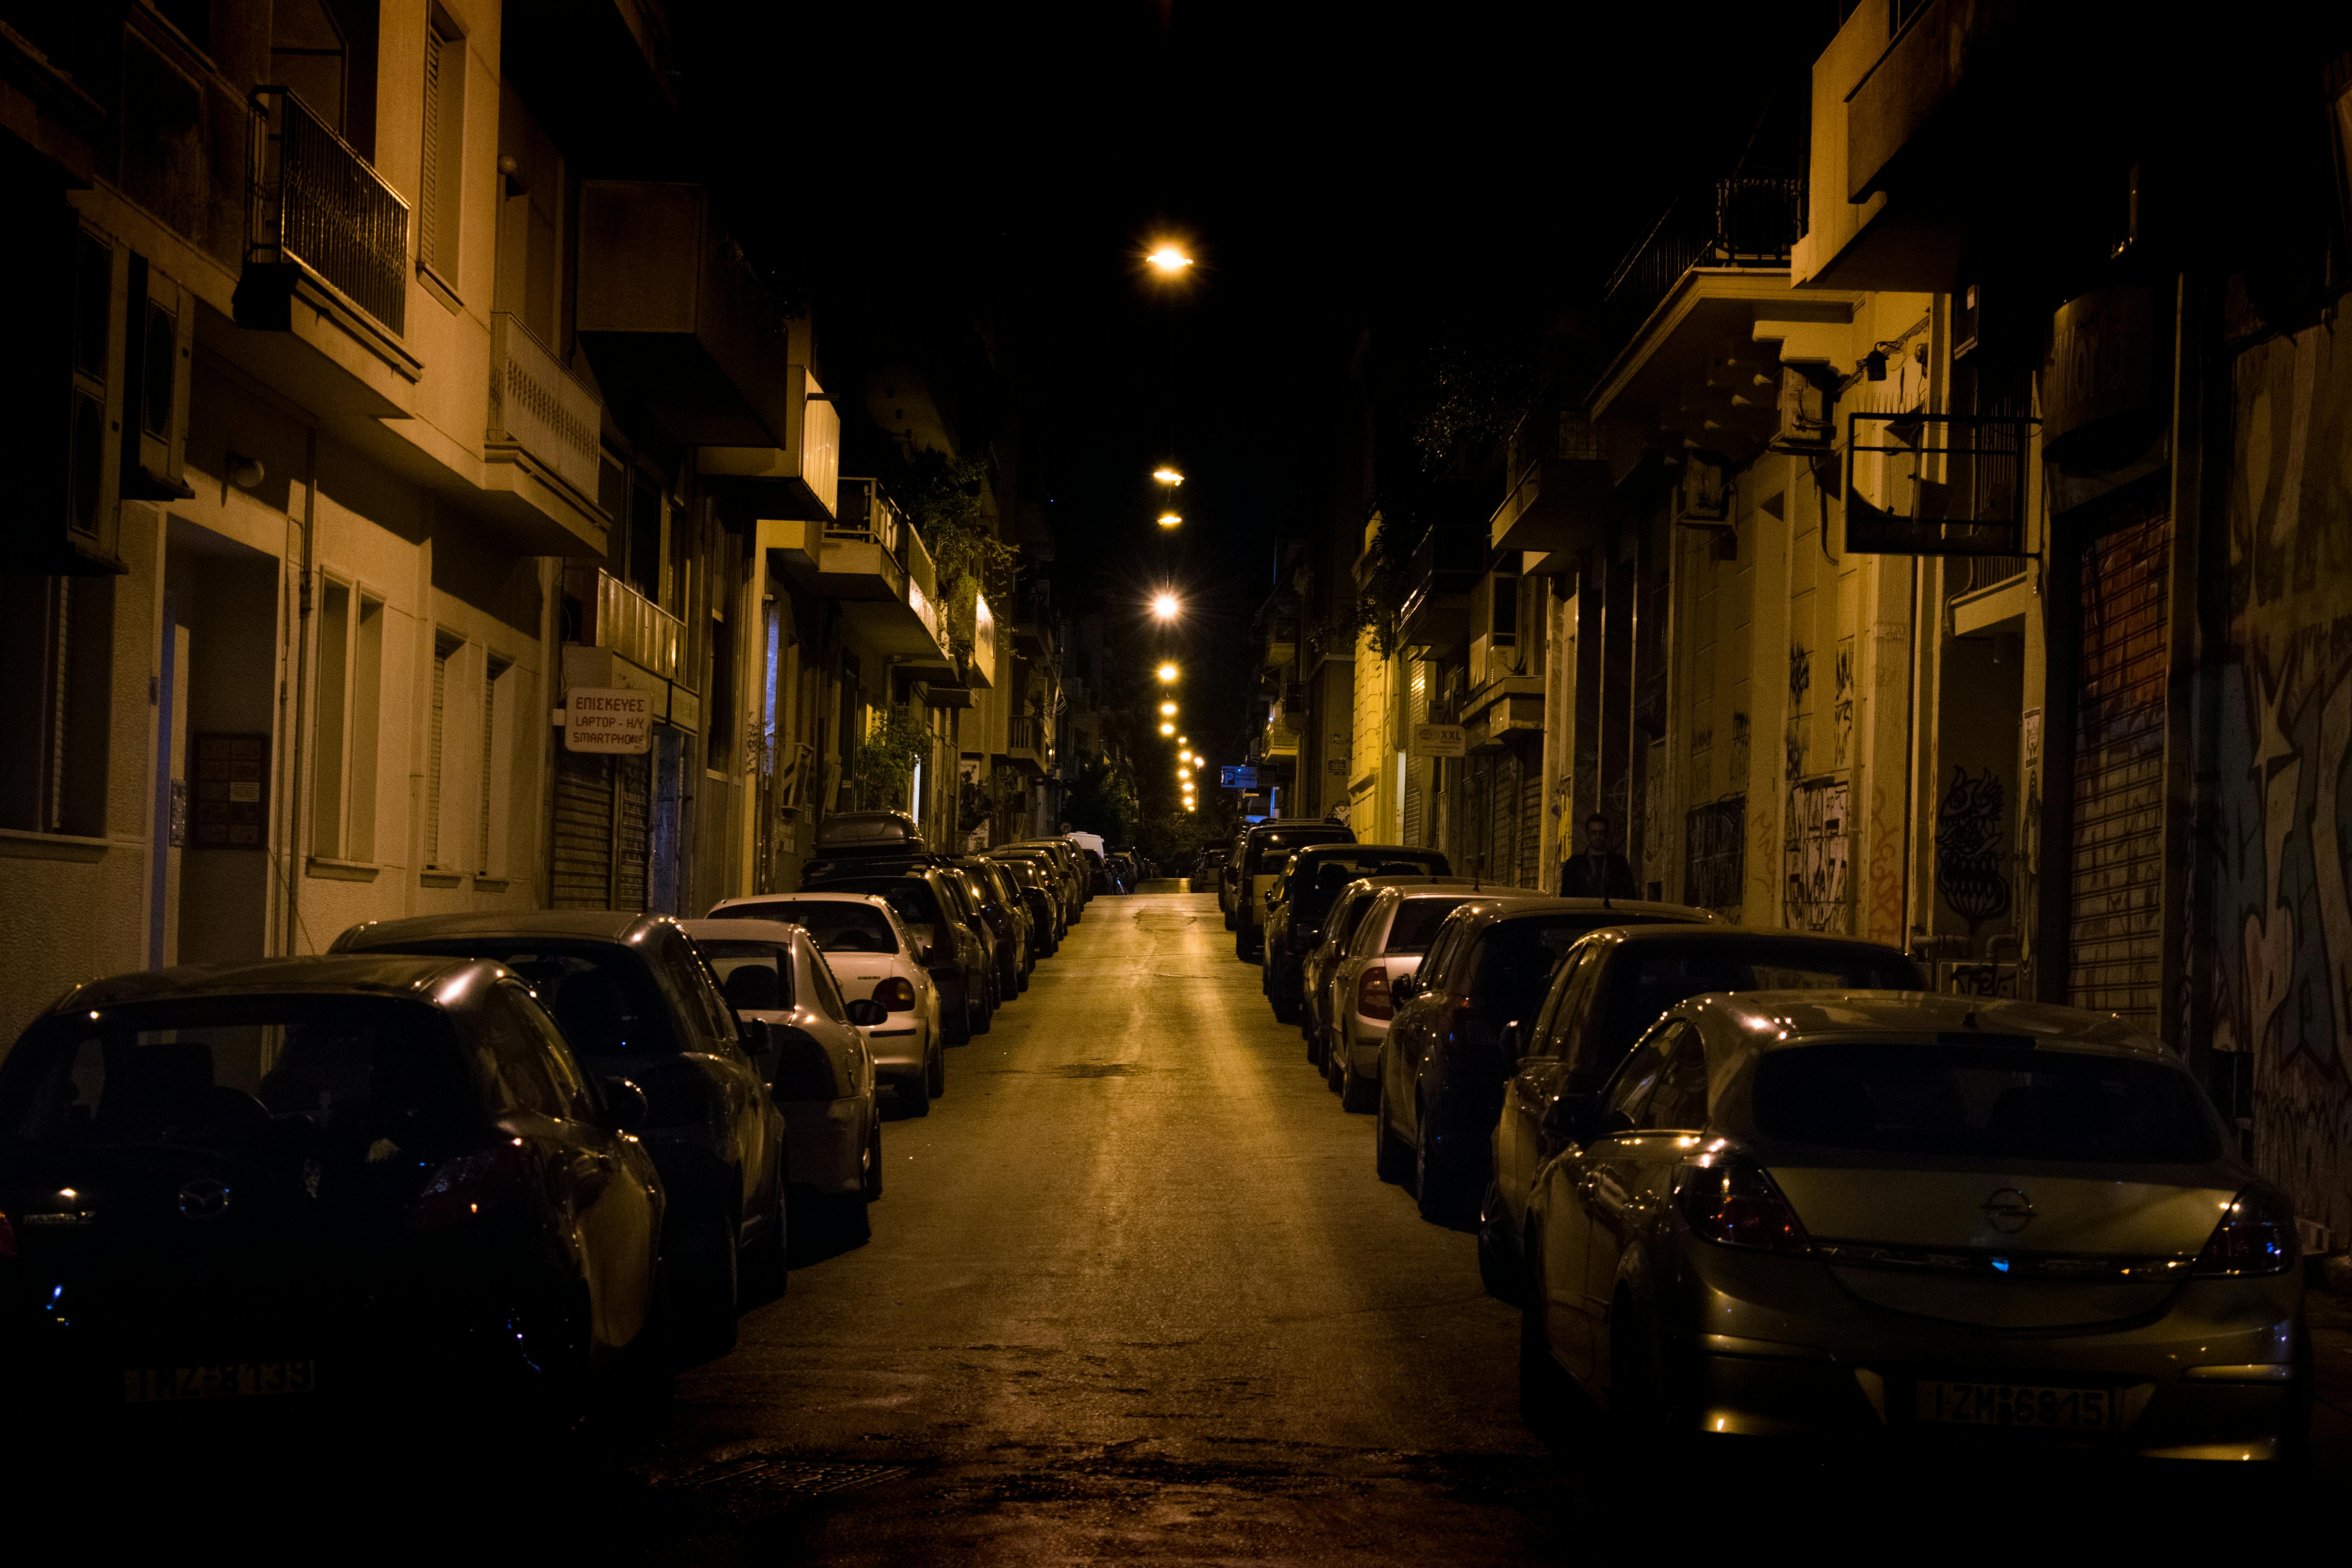 reddit dark streets & darker secrets